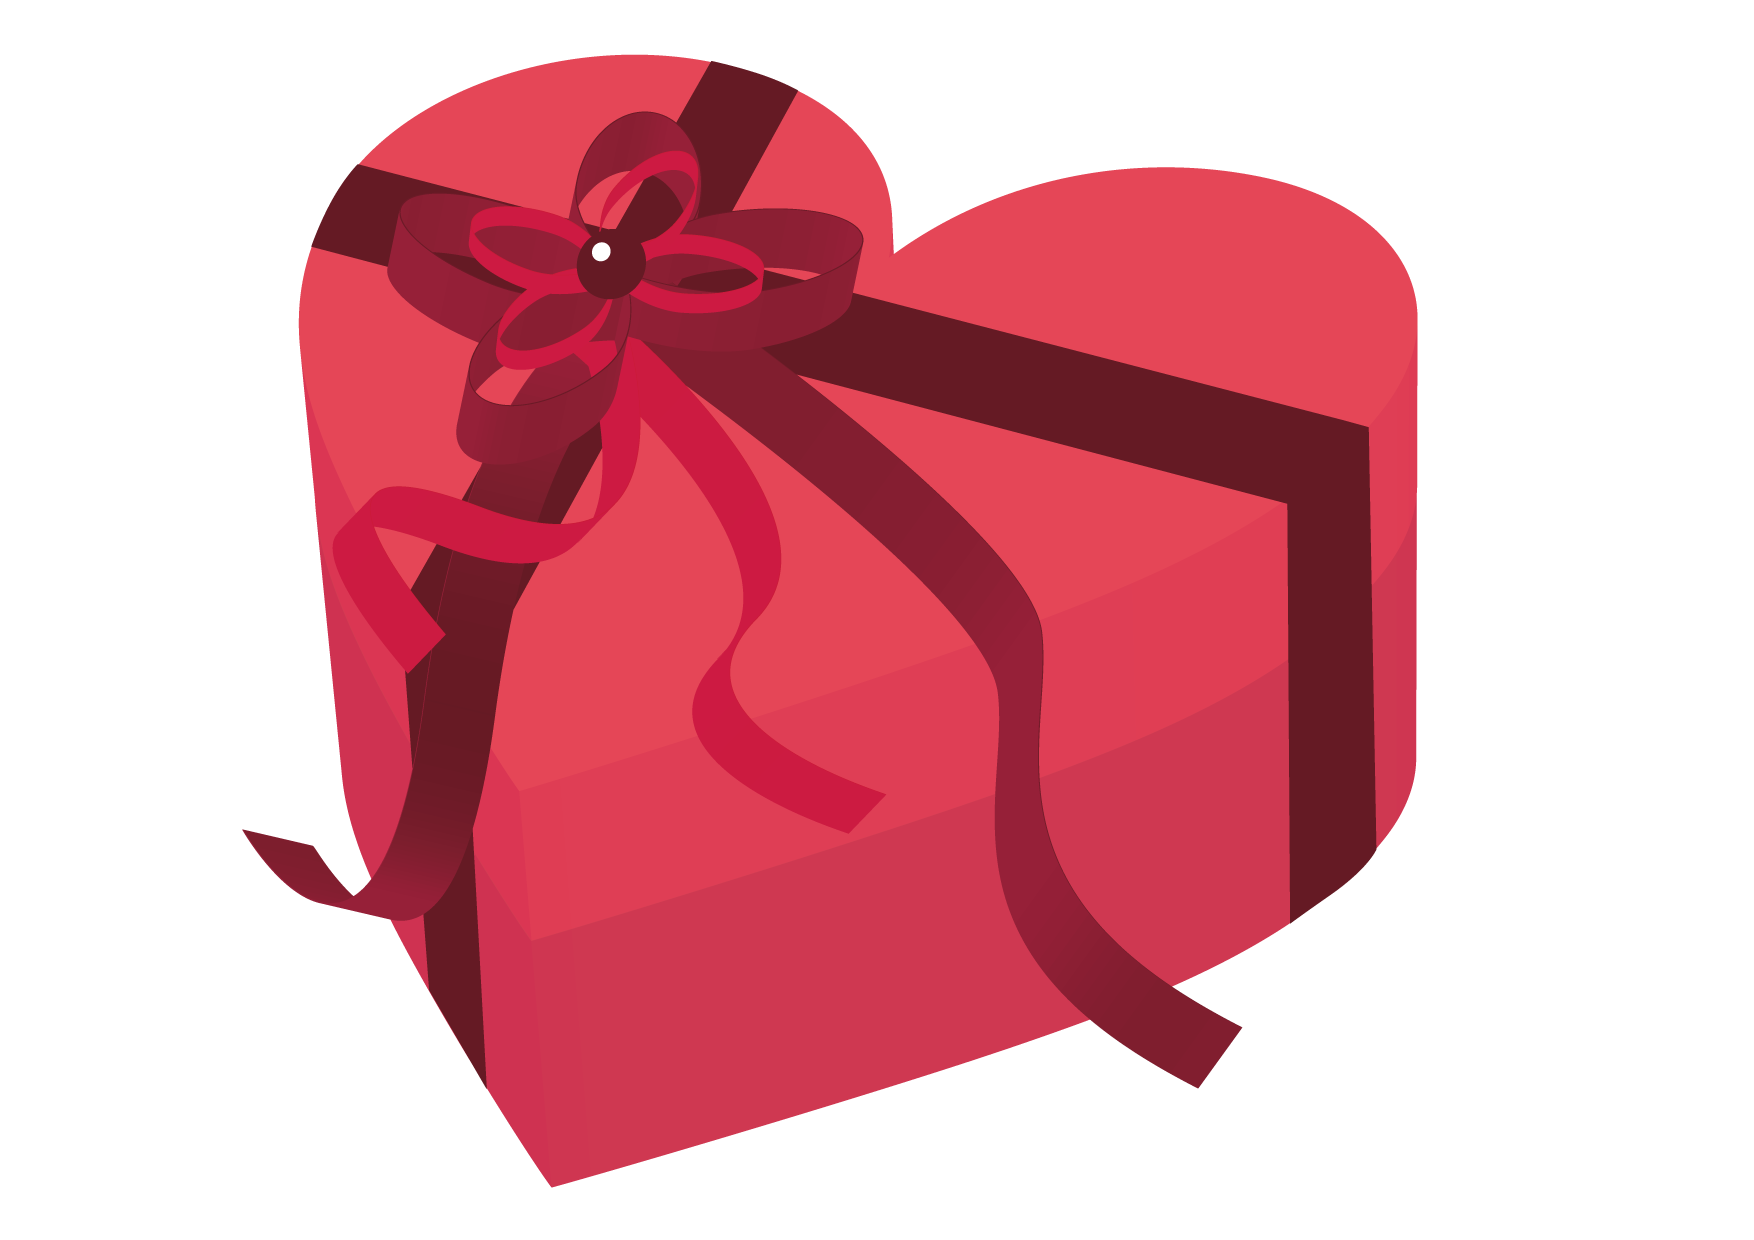 可愛いイラスト無料 バレンタイン ハート ピンク 箱 Free Illustration Valentine Heart Pink Box 公式 イラストダウンロード